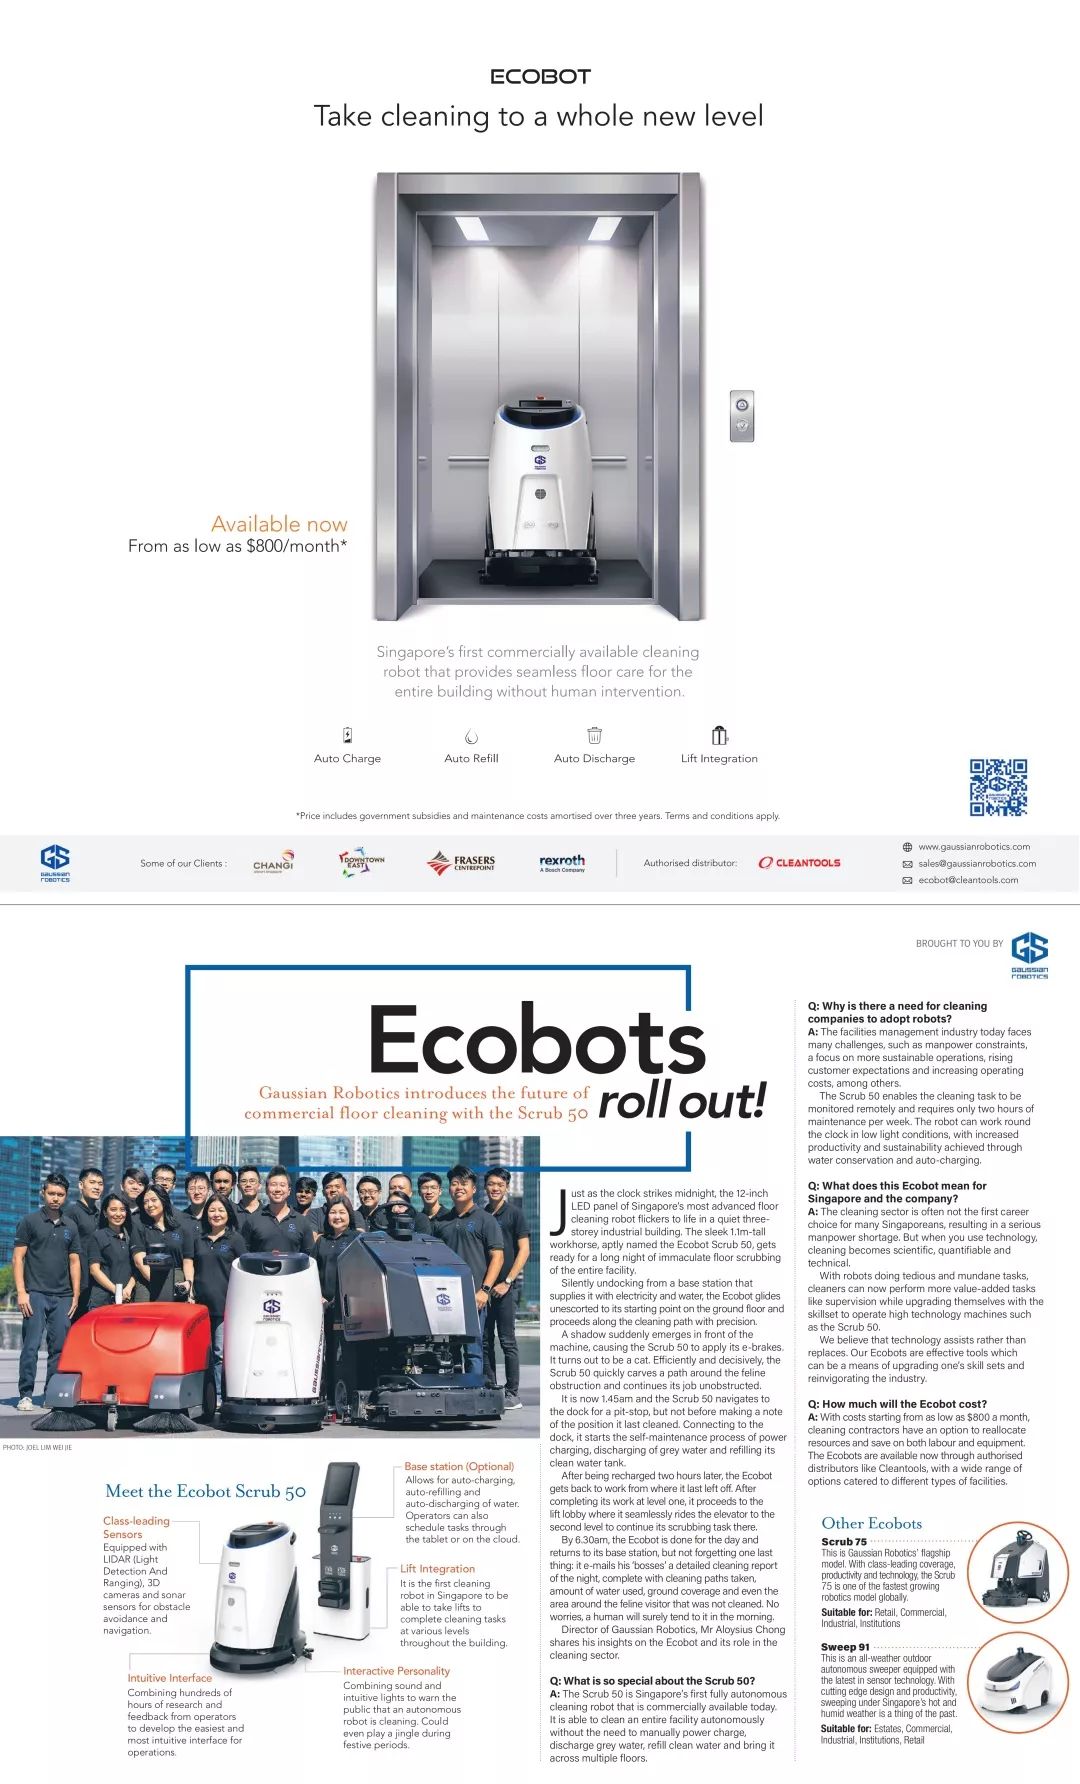 生态伙伴动态 | 高仙开启机器人租赁新模式，新加坡成为首个海外试点国家(泰国新加坡印度机器人公司)